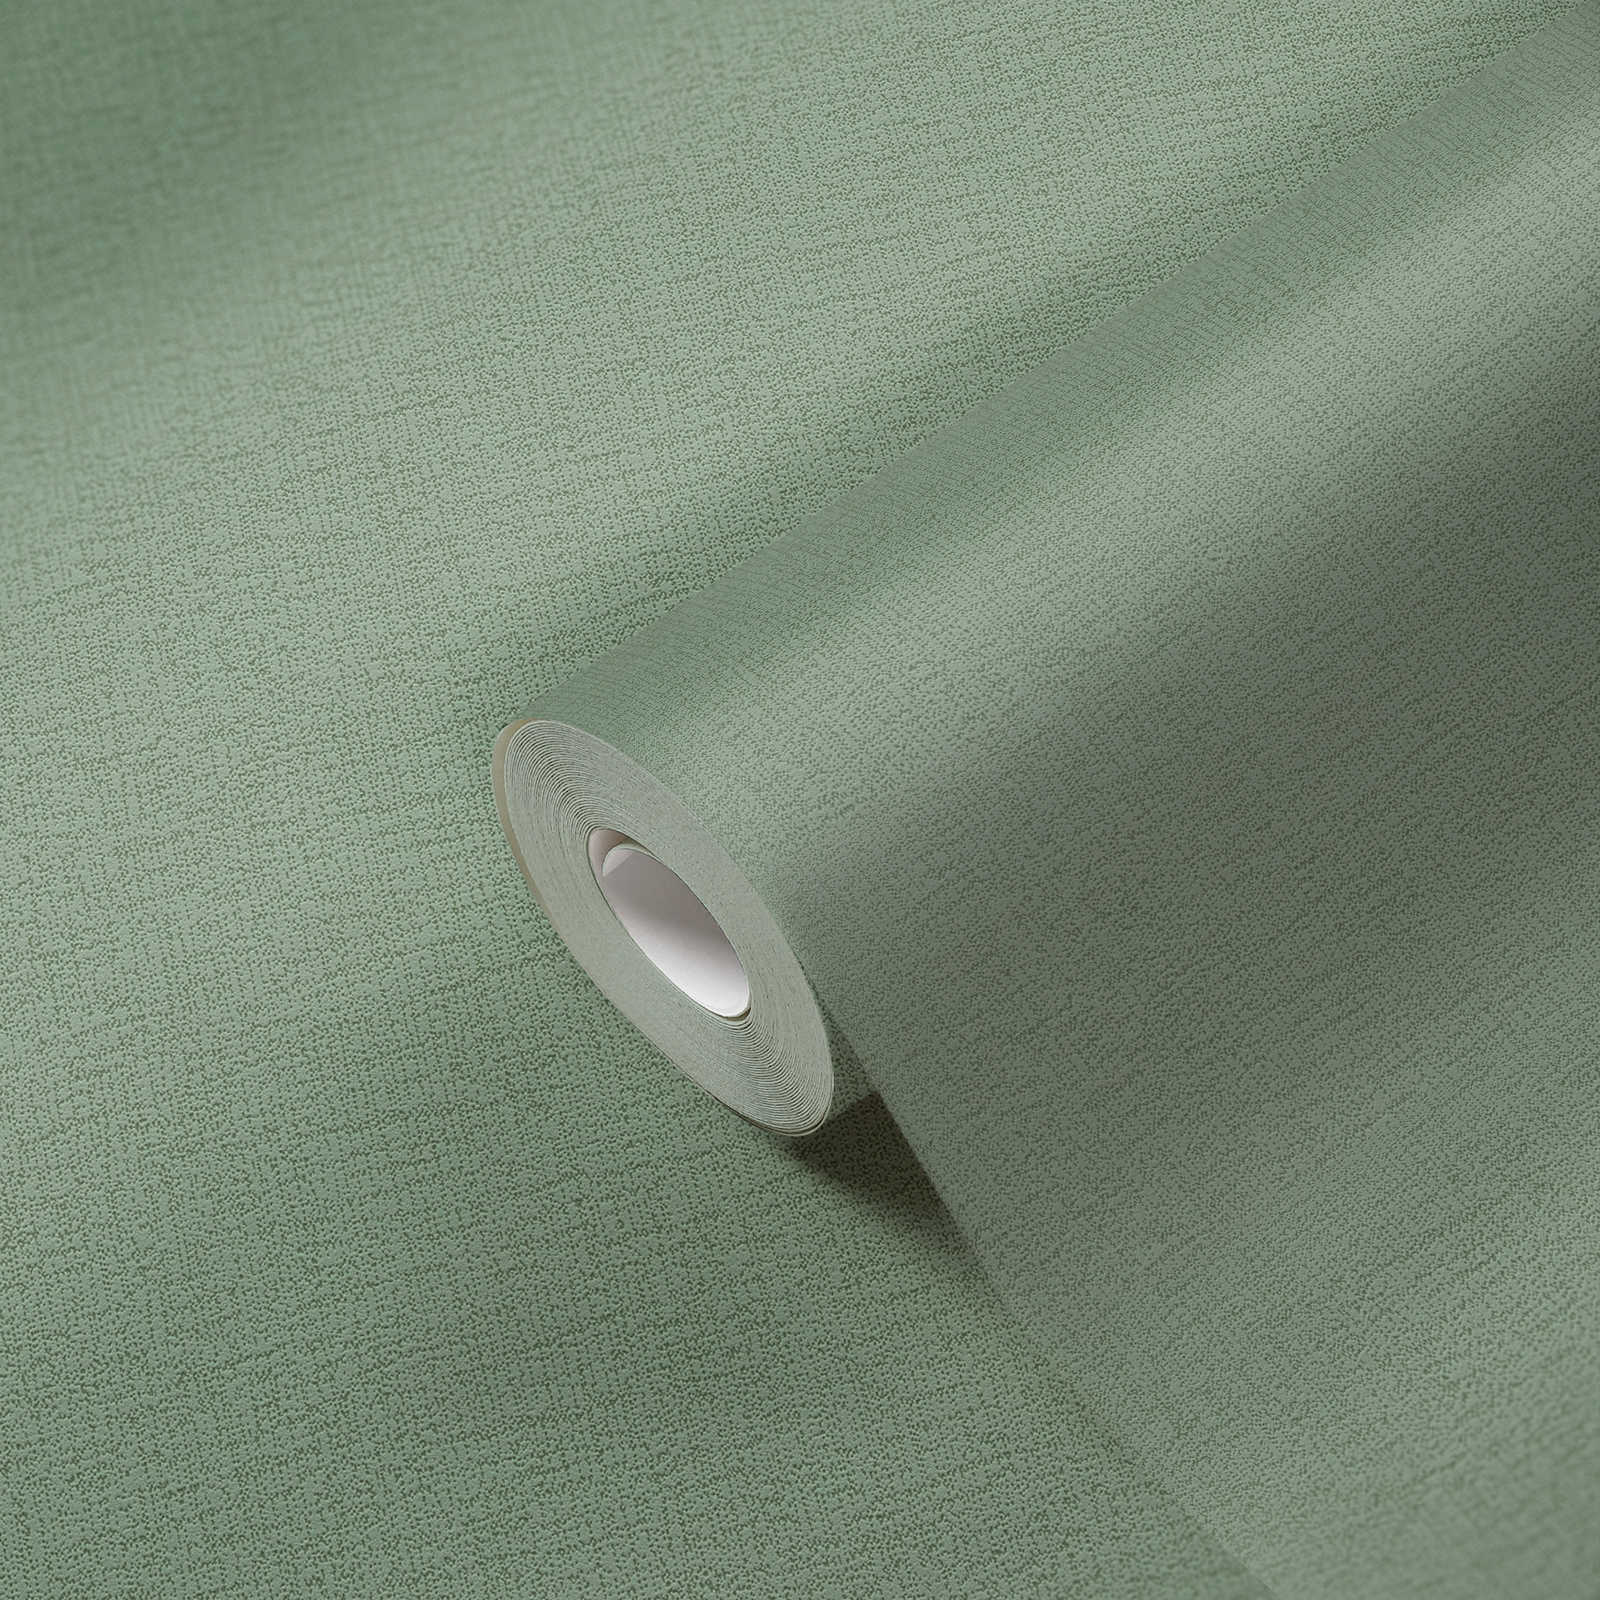             Papel pintado no tejido verde musgo liso con textura - verde
        